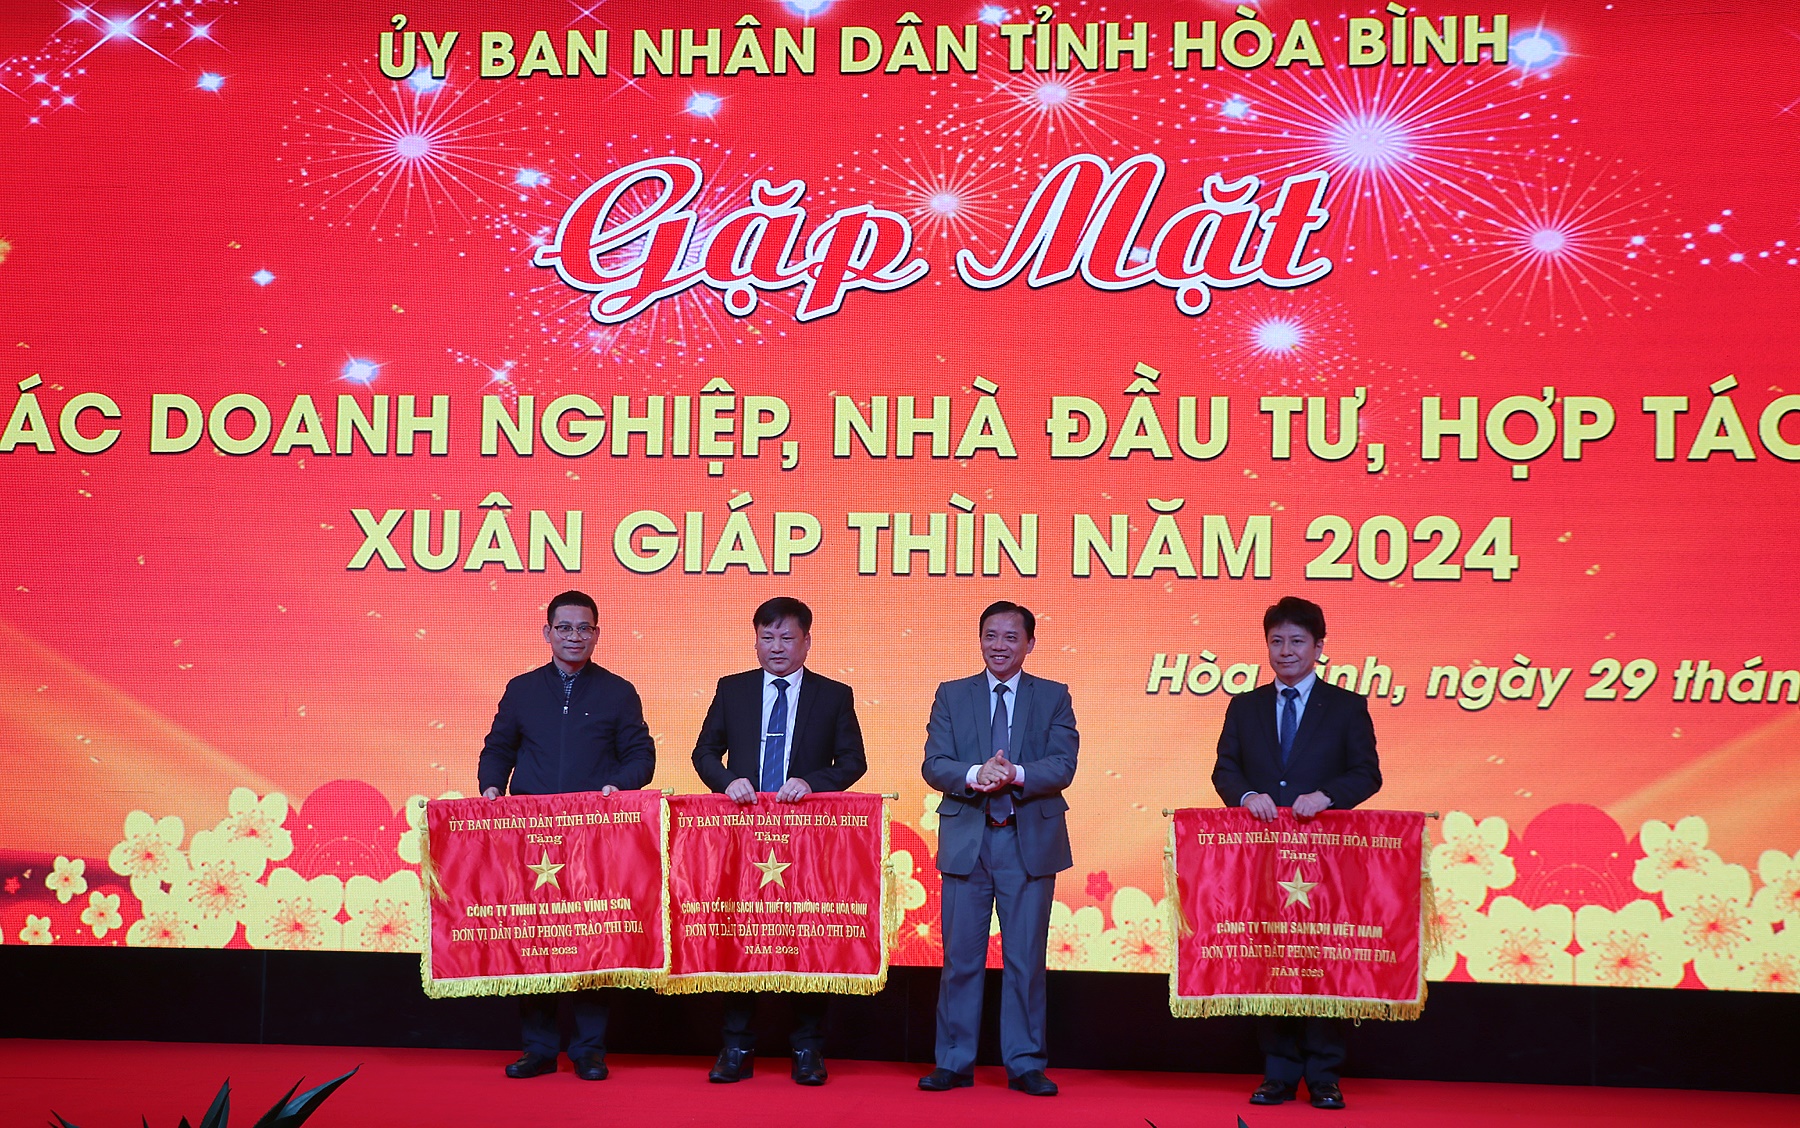 Đồng chí Bùi Văn Khánh, Phó Bí thư Tỉnh ủy. Chủ tịch UBND tỉnh trao Cờ thi đua cho 3 doanh nghiệp tiêu biểu xuất sắc, dẫn đầu trong Phong trào thi đua yêu nước năm 2023.